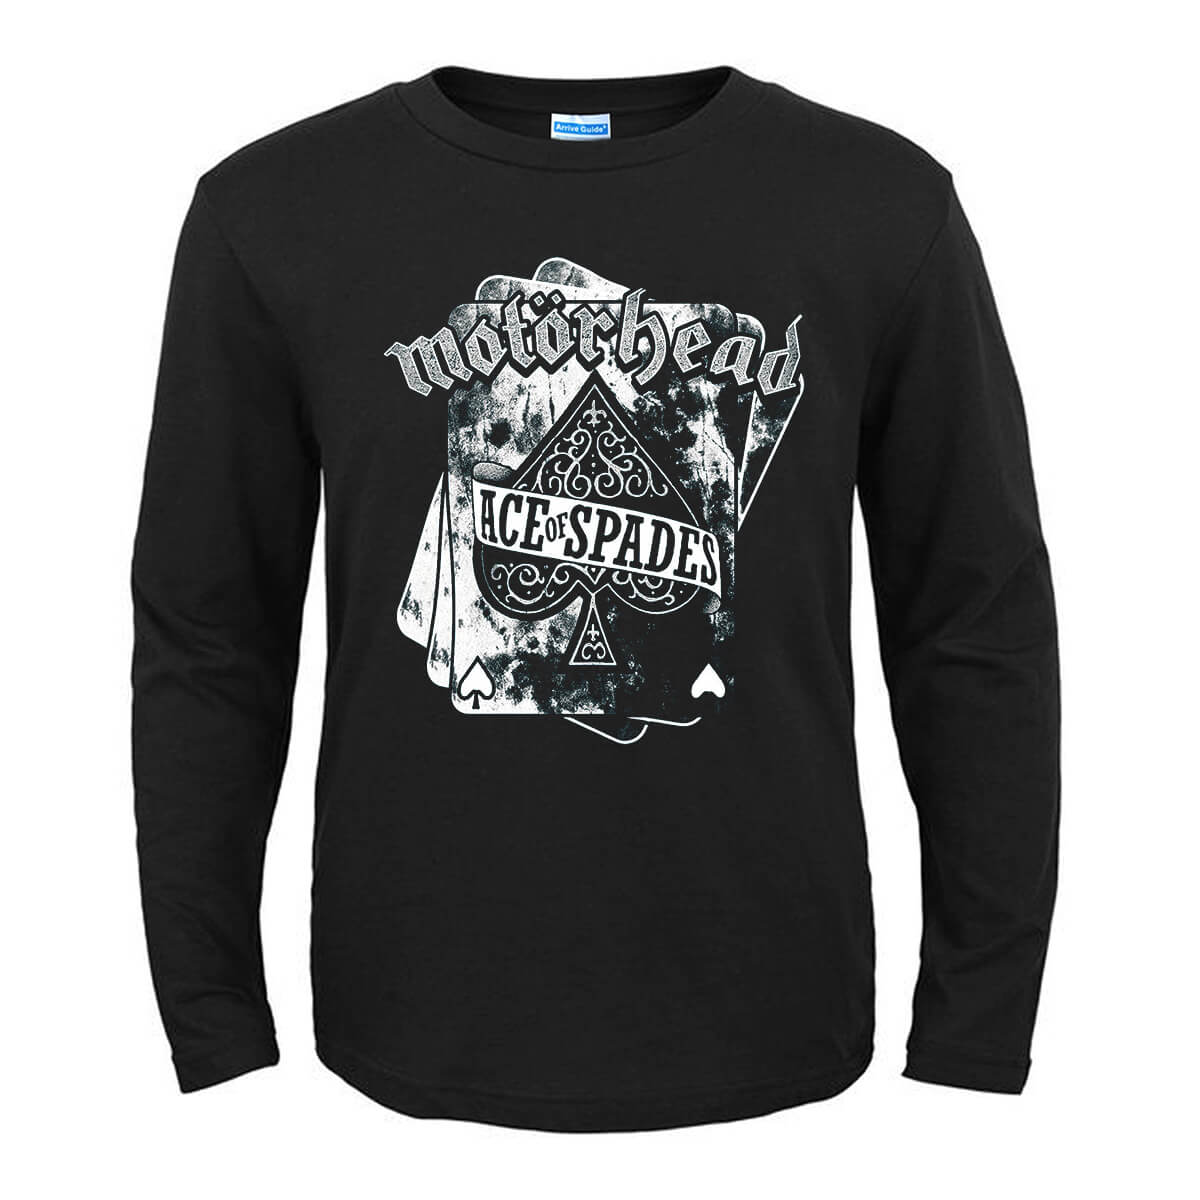 Stylish Ace Of Spades Skull Rock Metal Rockabilly motorhead fan Gift Short-Sleeve T-Shirt